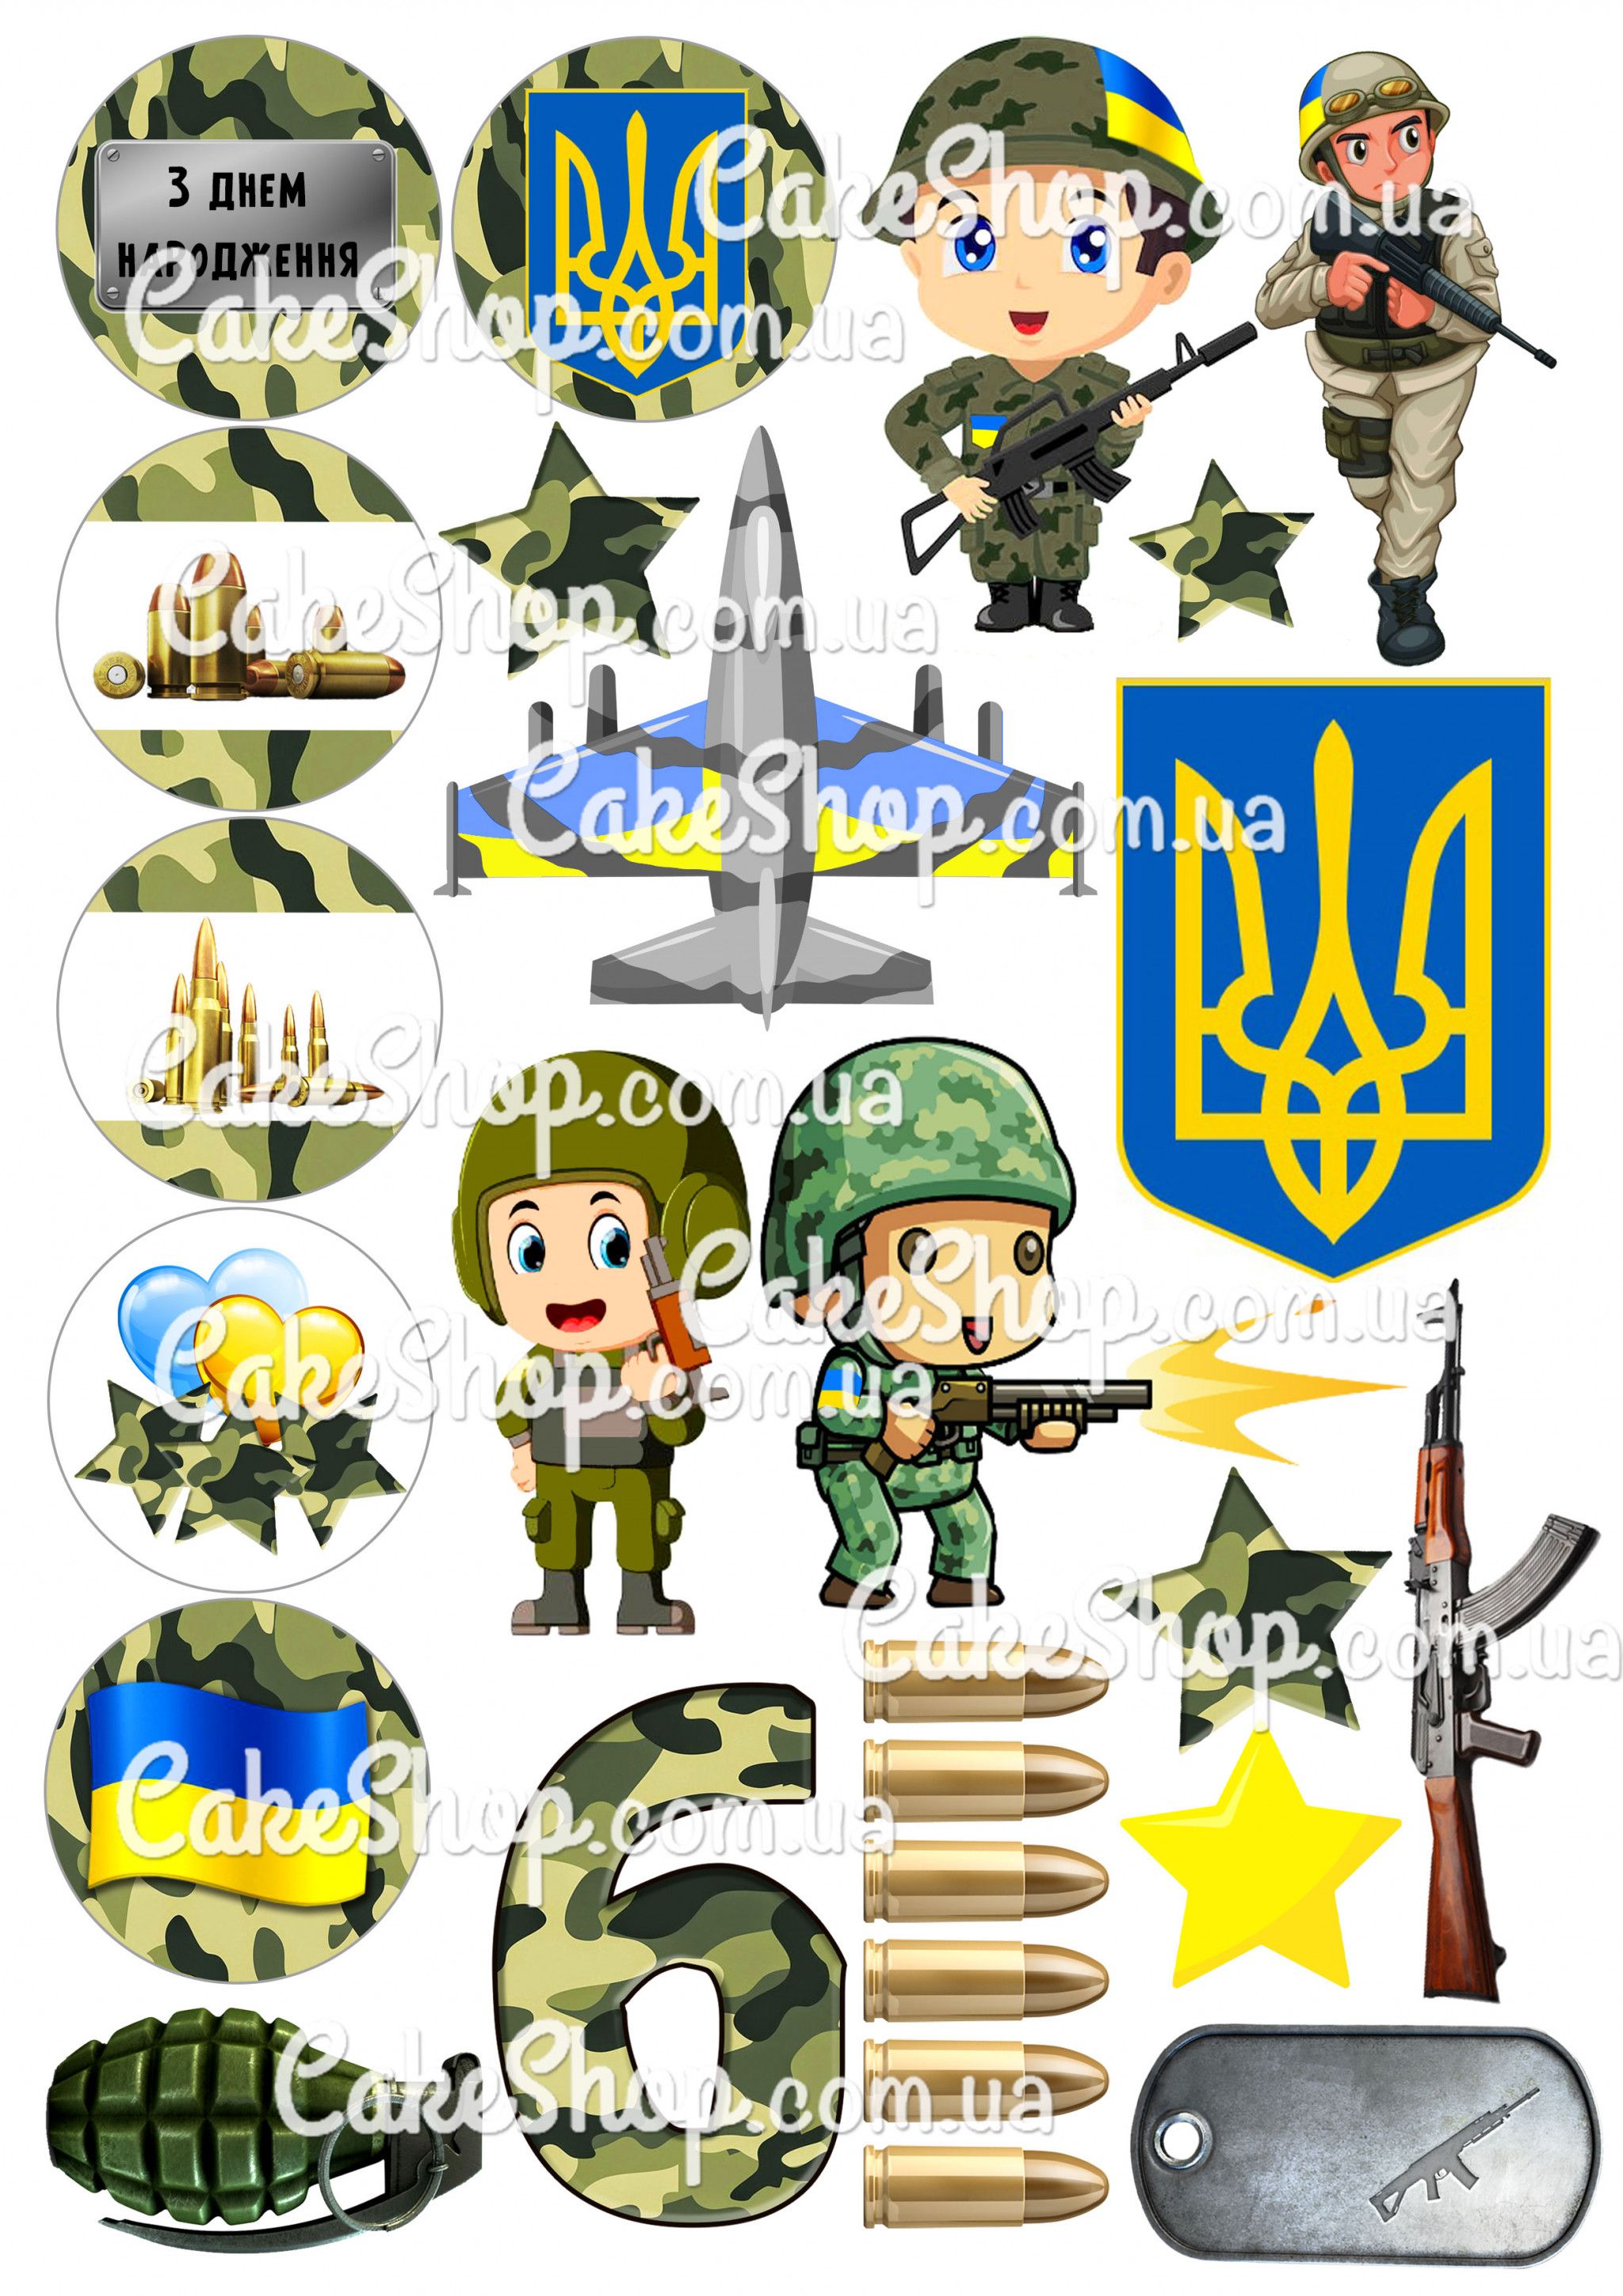 ⋗ Вафельная картинка Защитник Украины 4 купить в Украине ➛ CakeShop.com.ua, фото